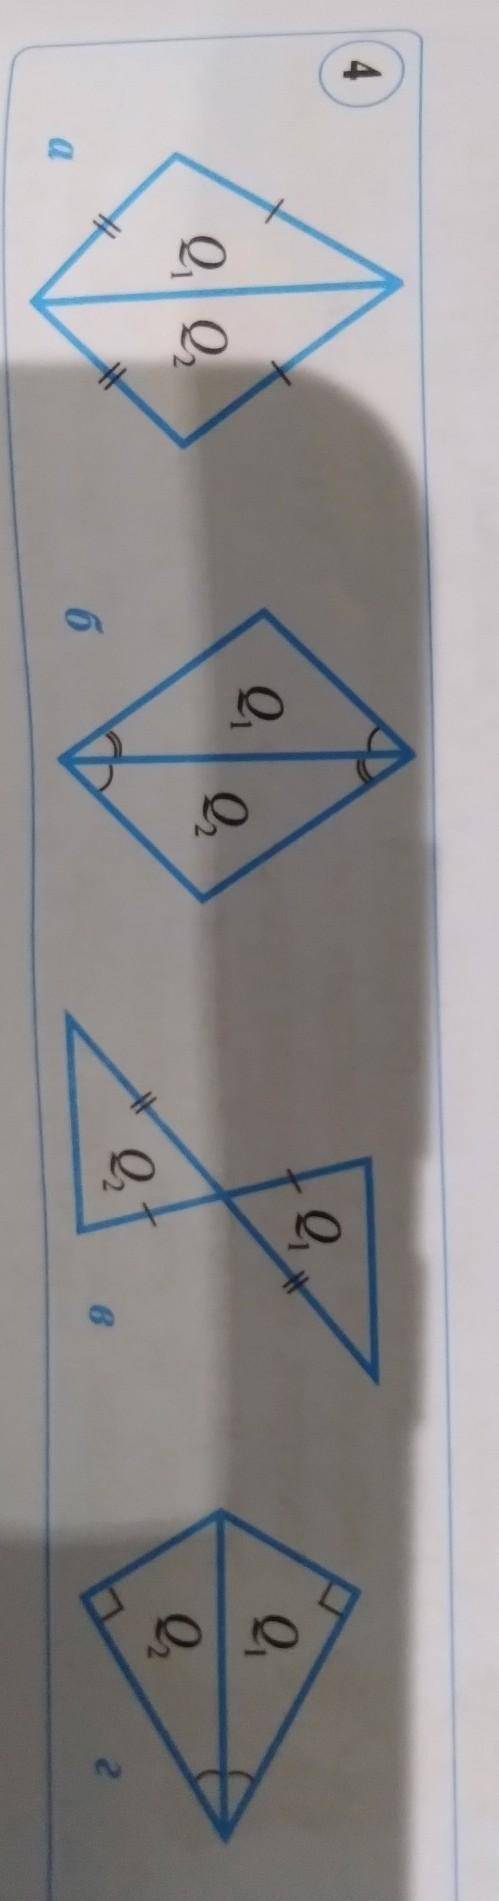 Докажите что треугольник Q1 и Q2 на рисунке 4 равны.​